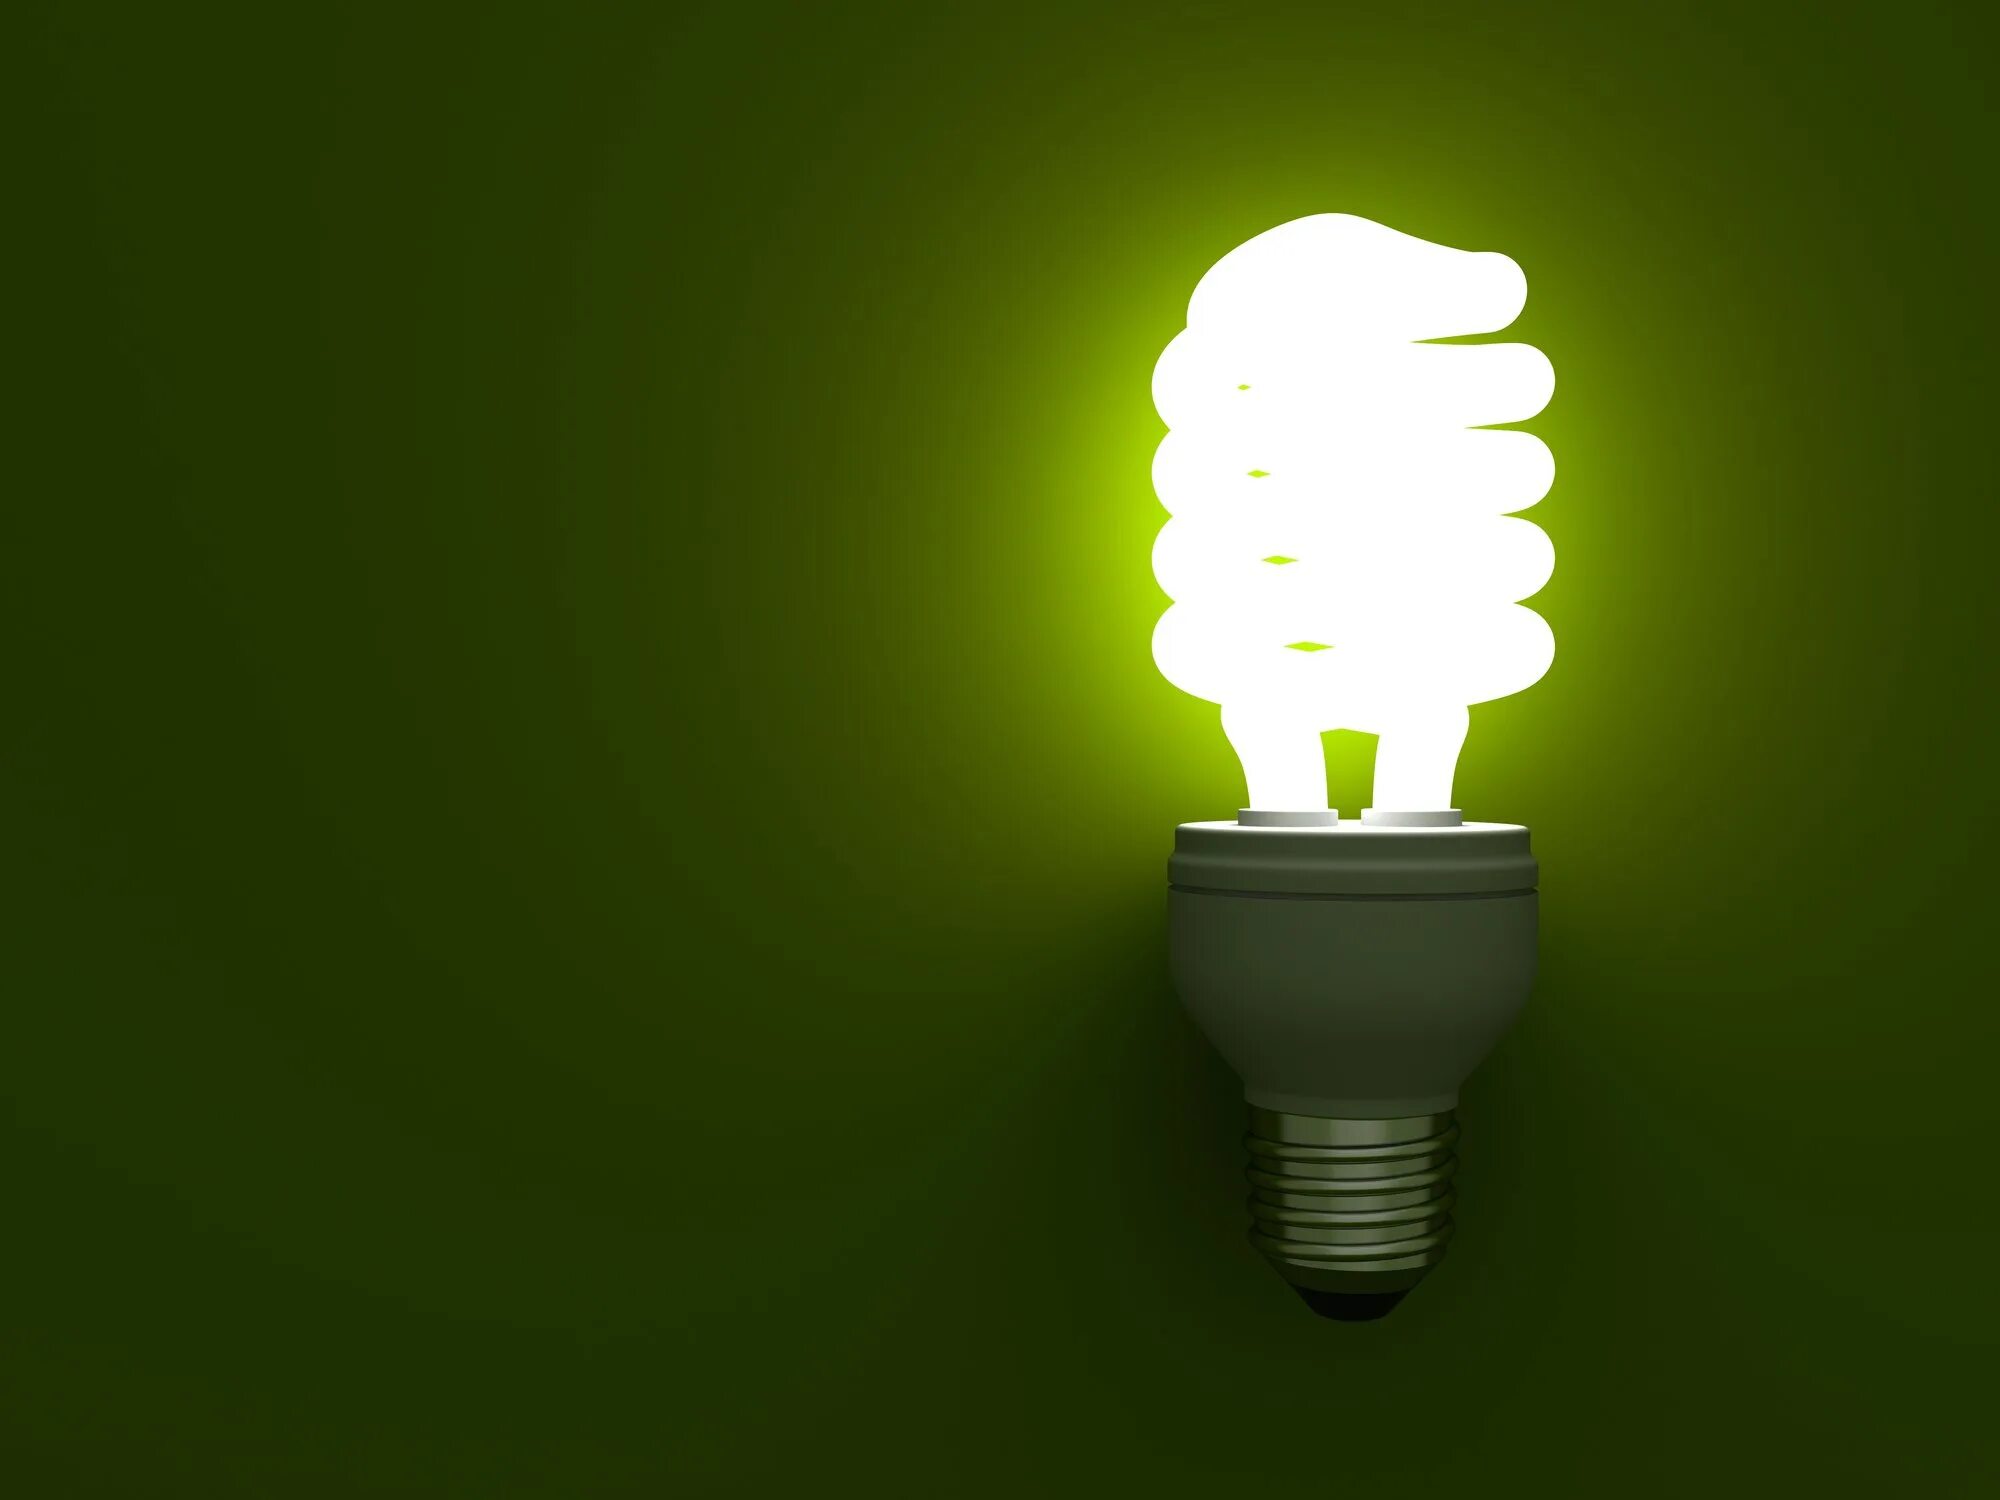 Энергосбережение в быту проект. Энергосбережение лампочки. Яркая лампочка. Экономные лампочки. Лампочка светится.